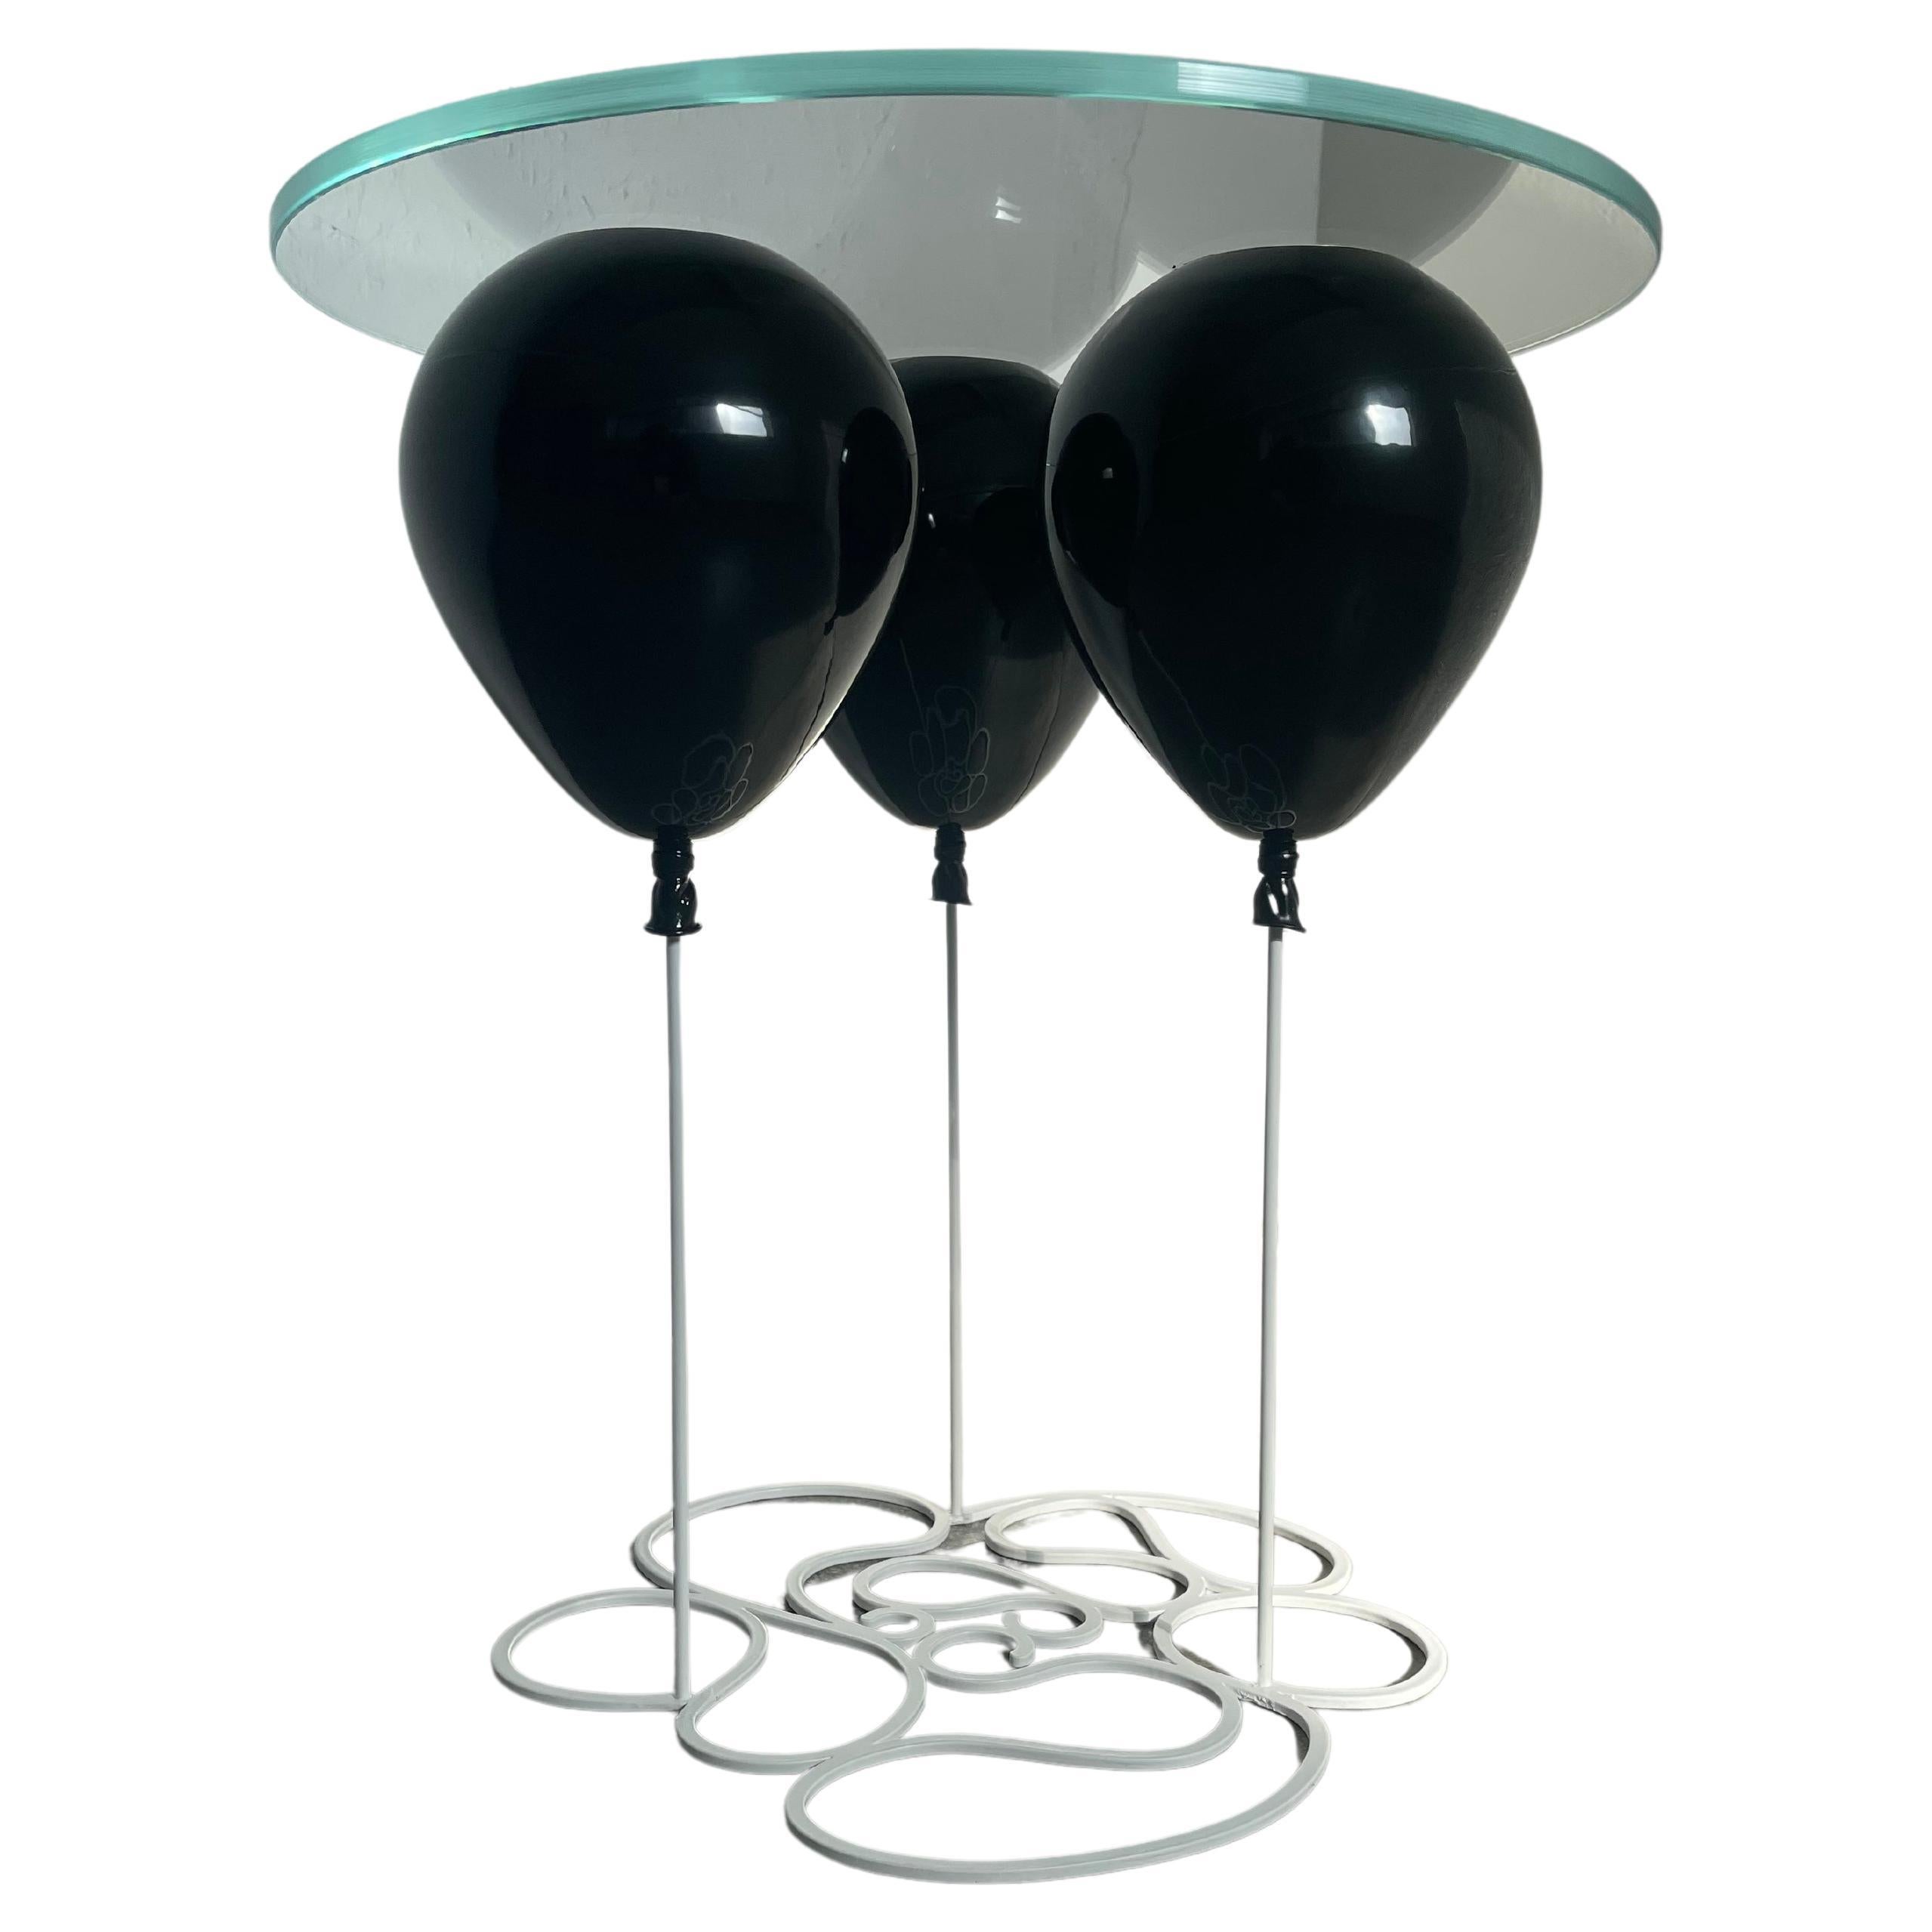 Moderner runder Ballon-Beistelltisch, aus Edelstahl und schwarzem Glas